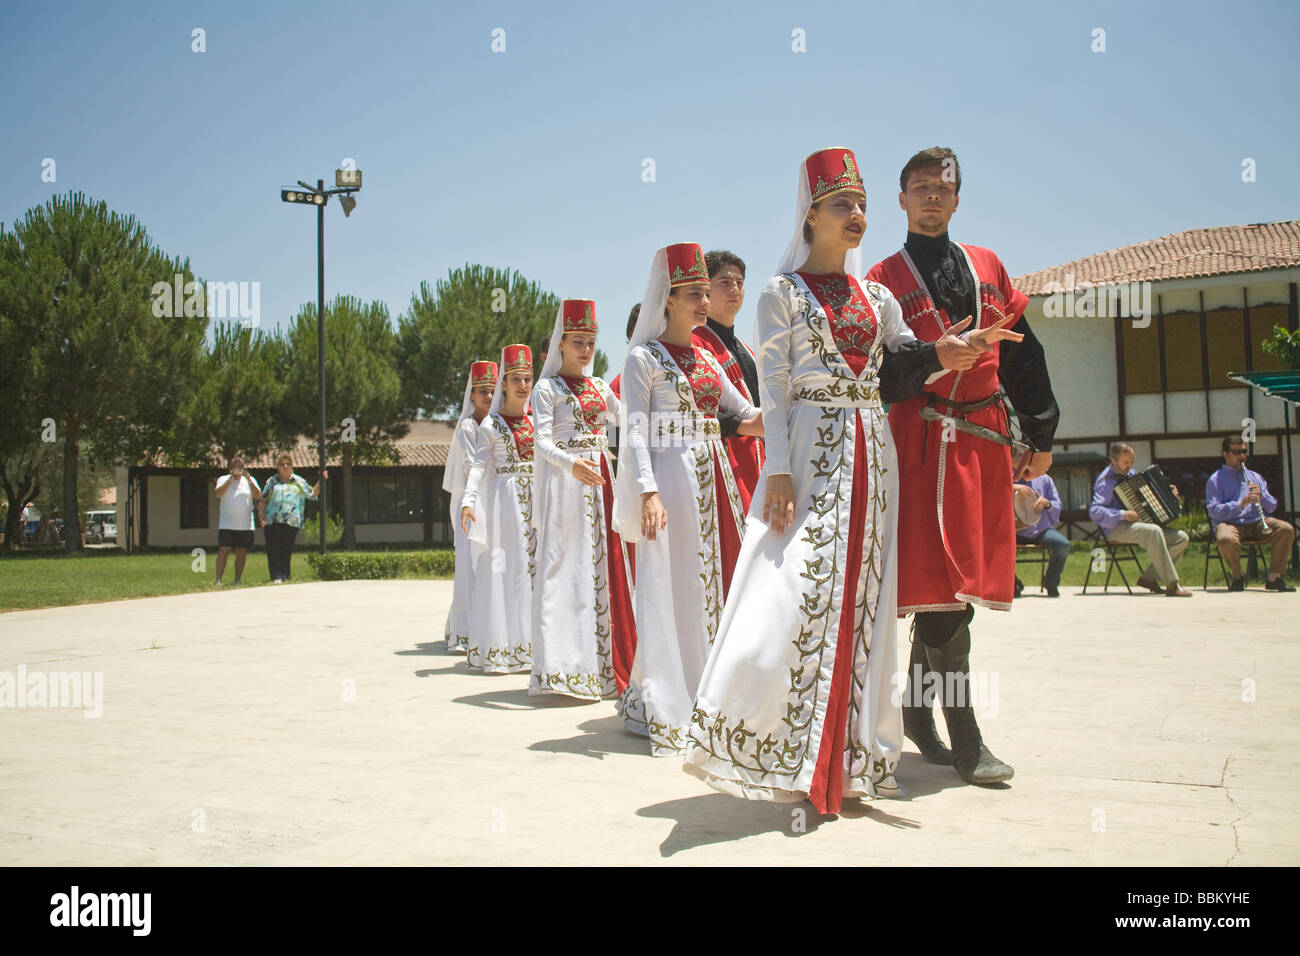 Türkische Männer & Frauen tragen traditionelle Kleidung führen östlichen  anatolische Tänze von Artvin & Kars Selcuk Türkei Oceania Cruise tour ©  Myrleen Pearson Stockfotografie - Alamy